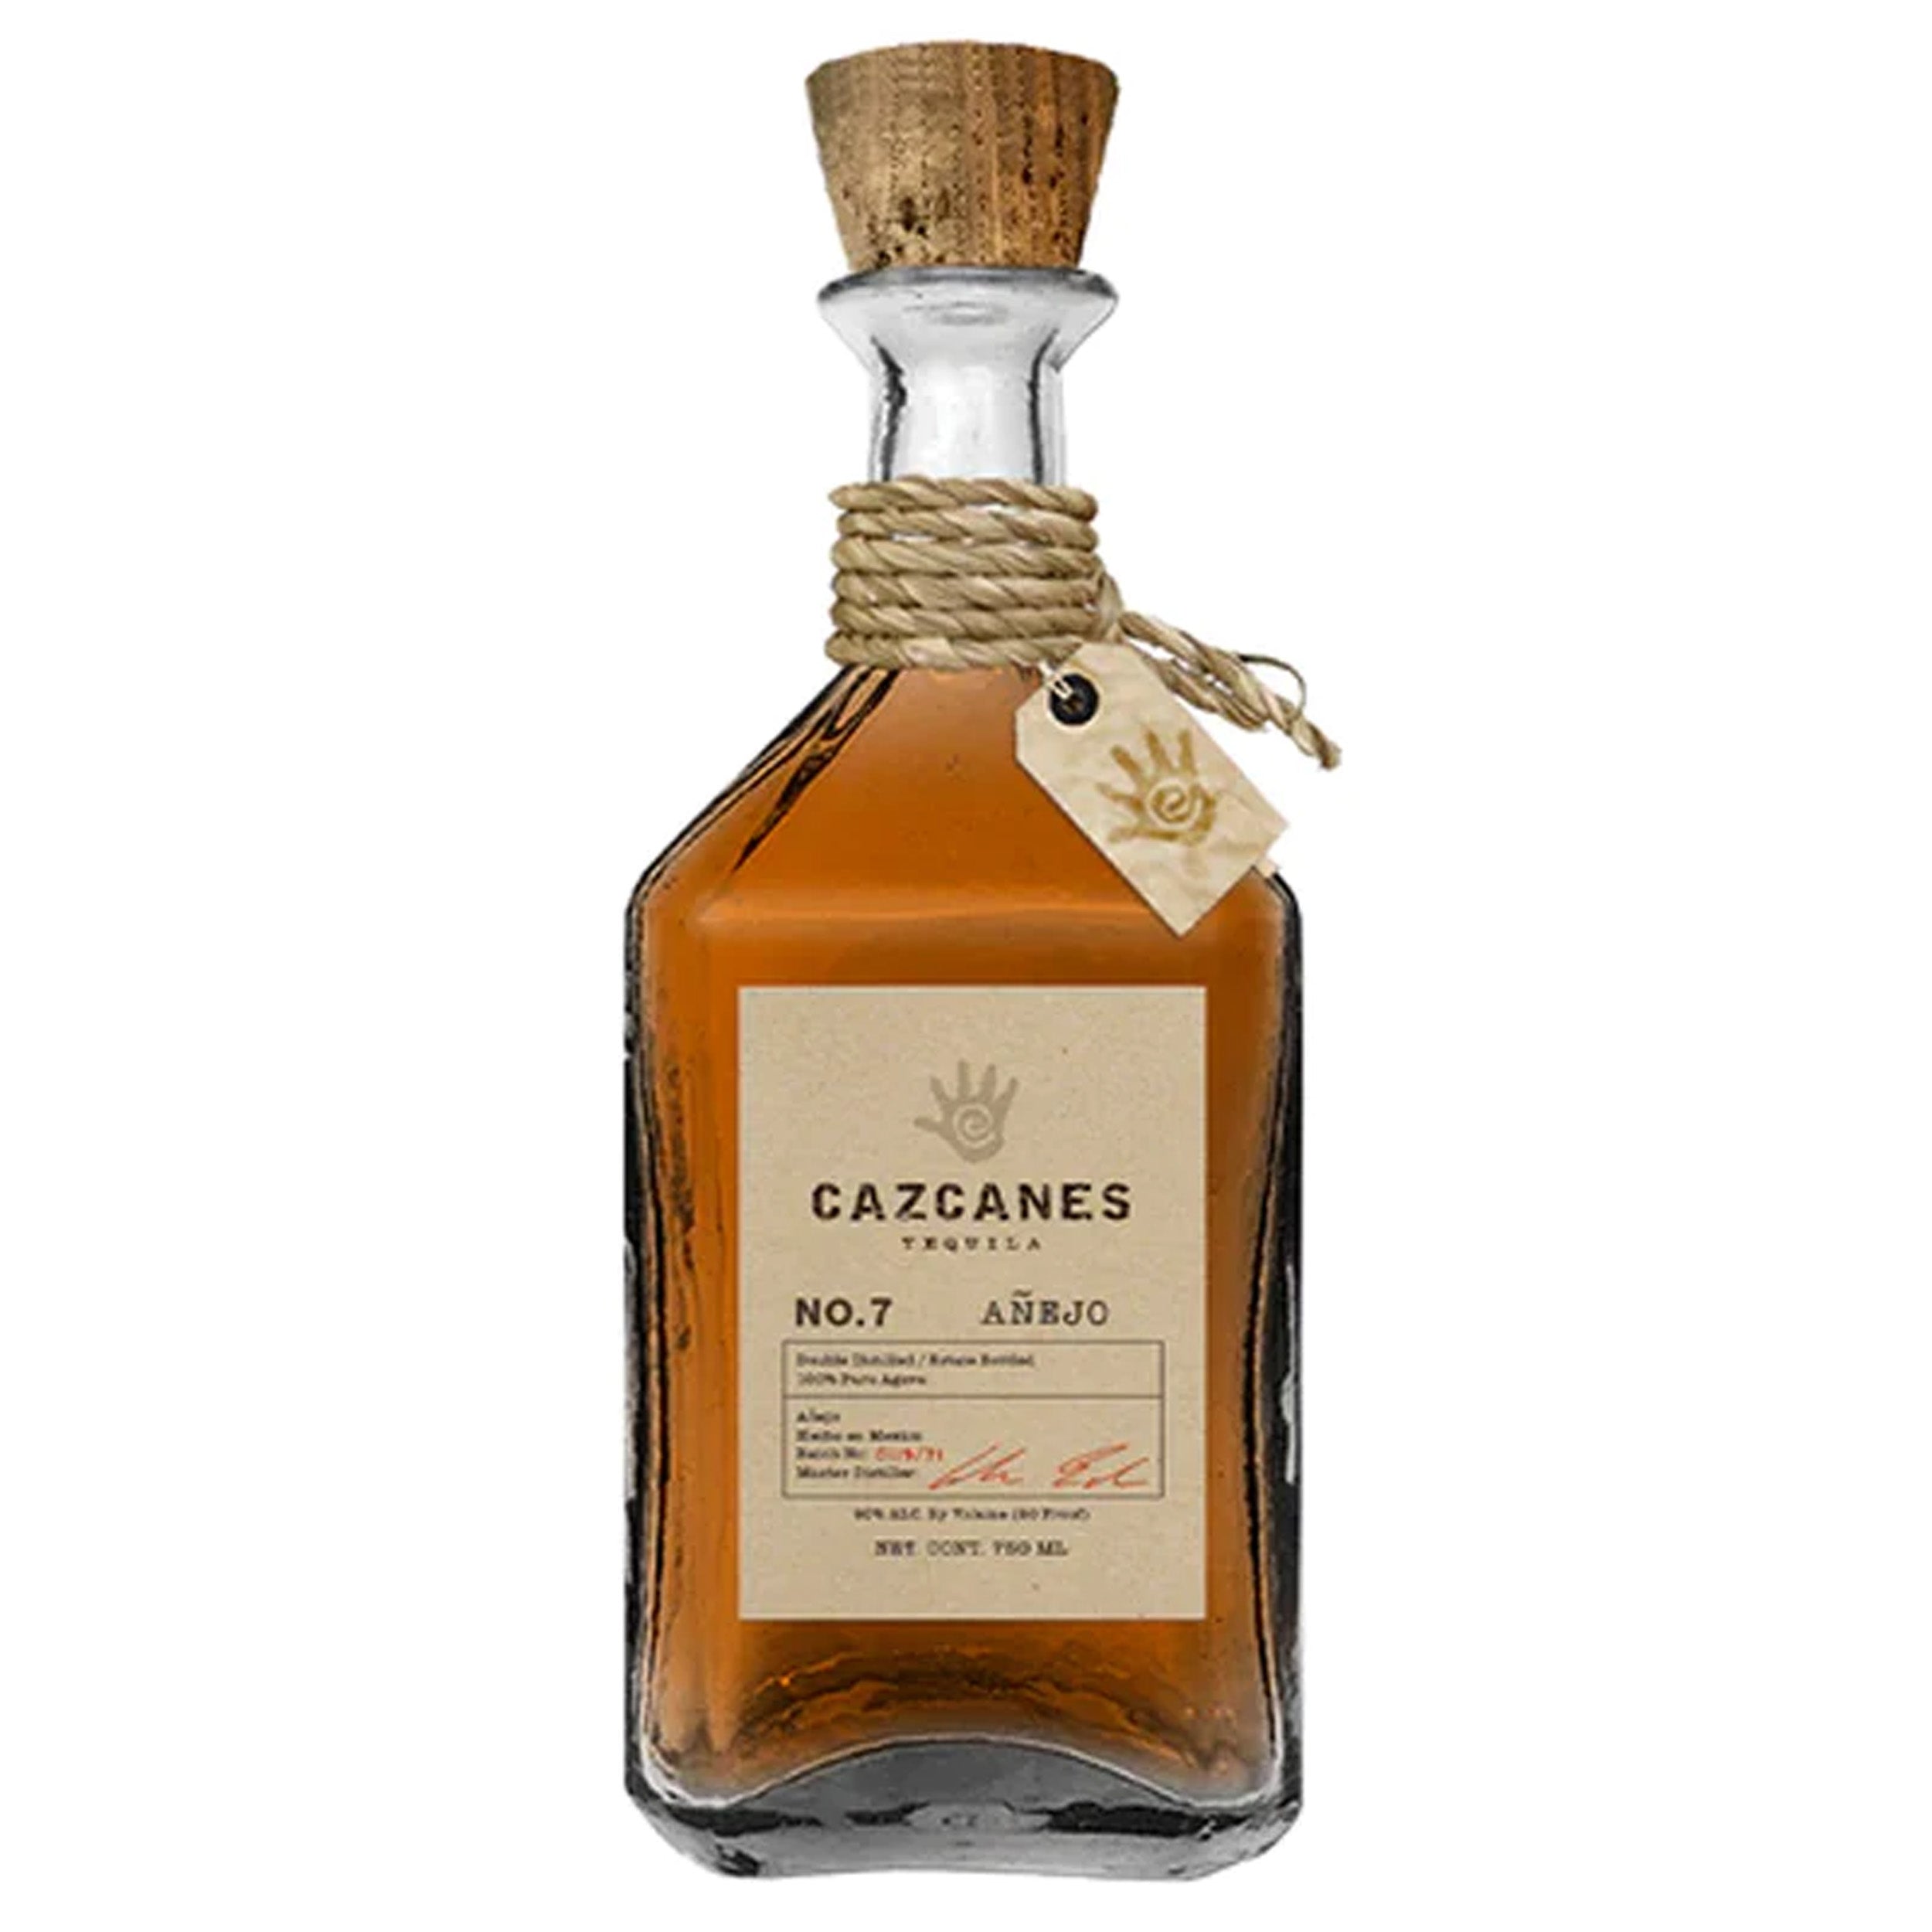 Cazcanes No. 7 Anejo Tequila Nom 1614